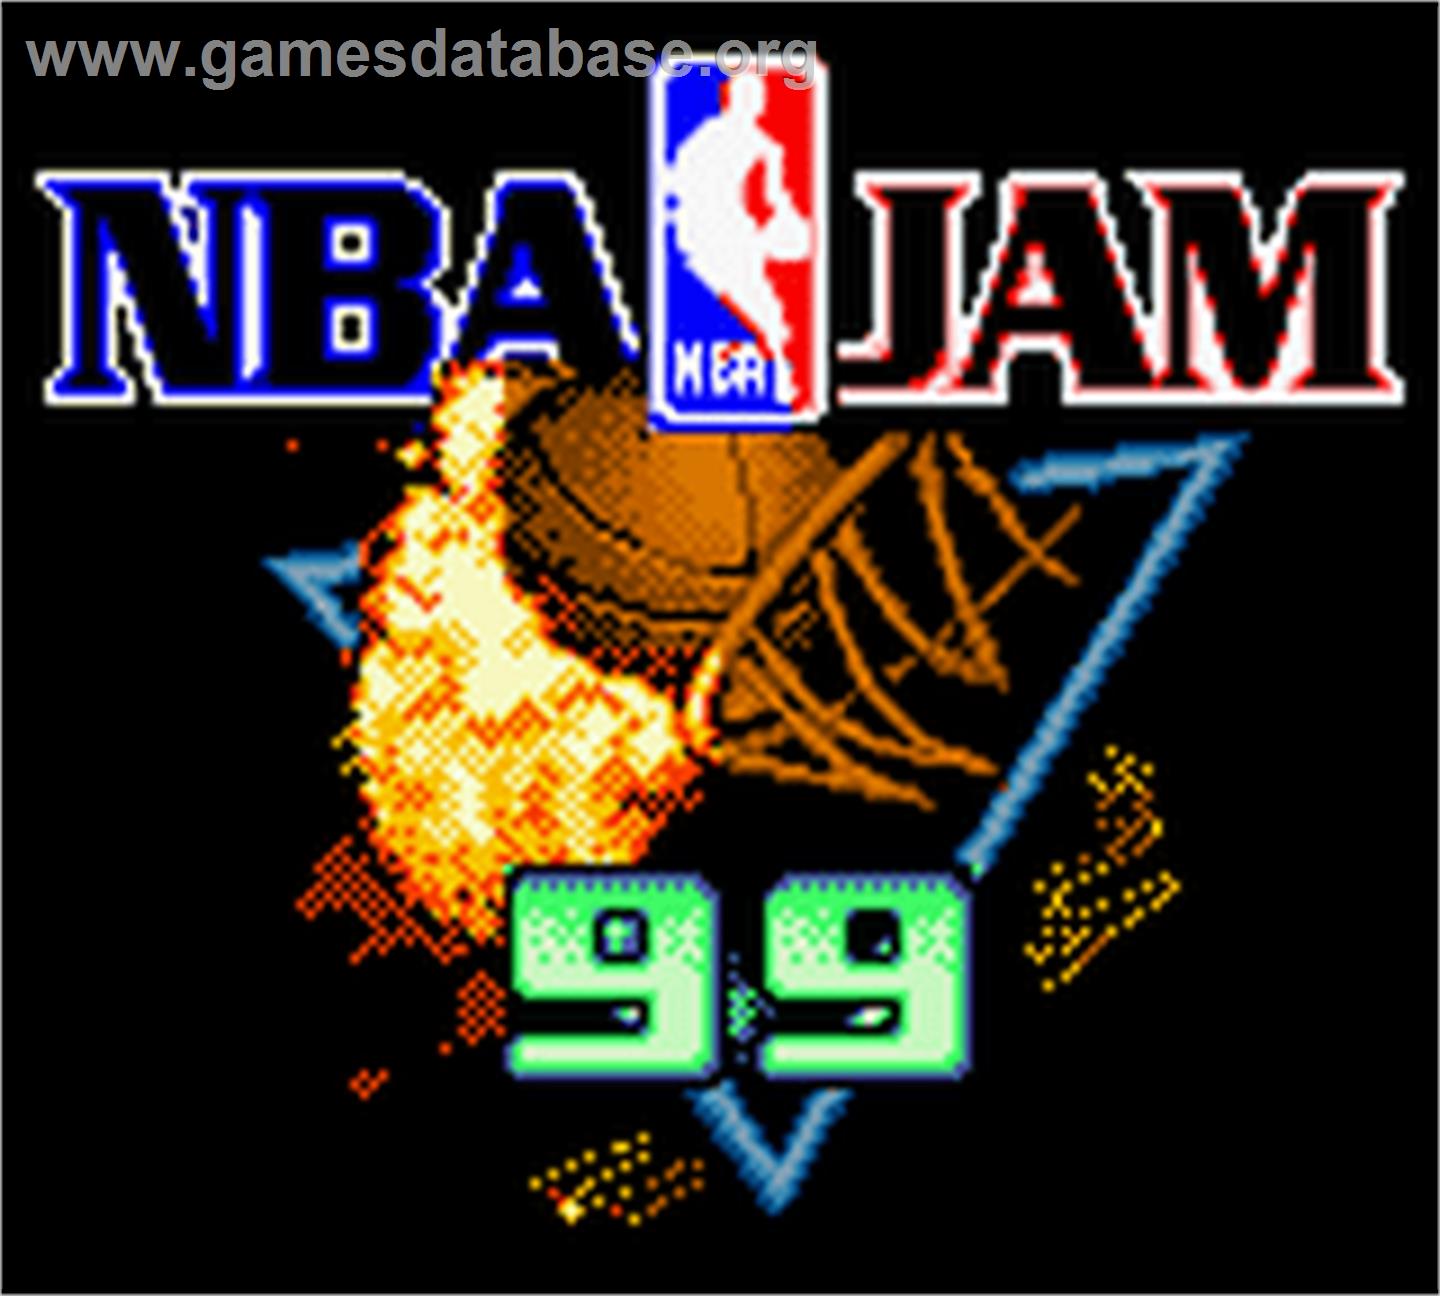 NBA Jam 99 - Nintendo Game Boy Color - Artwork - Title Screen